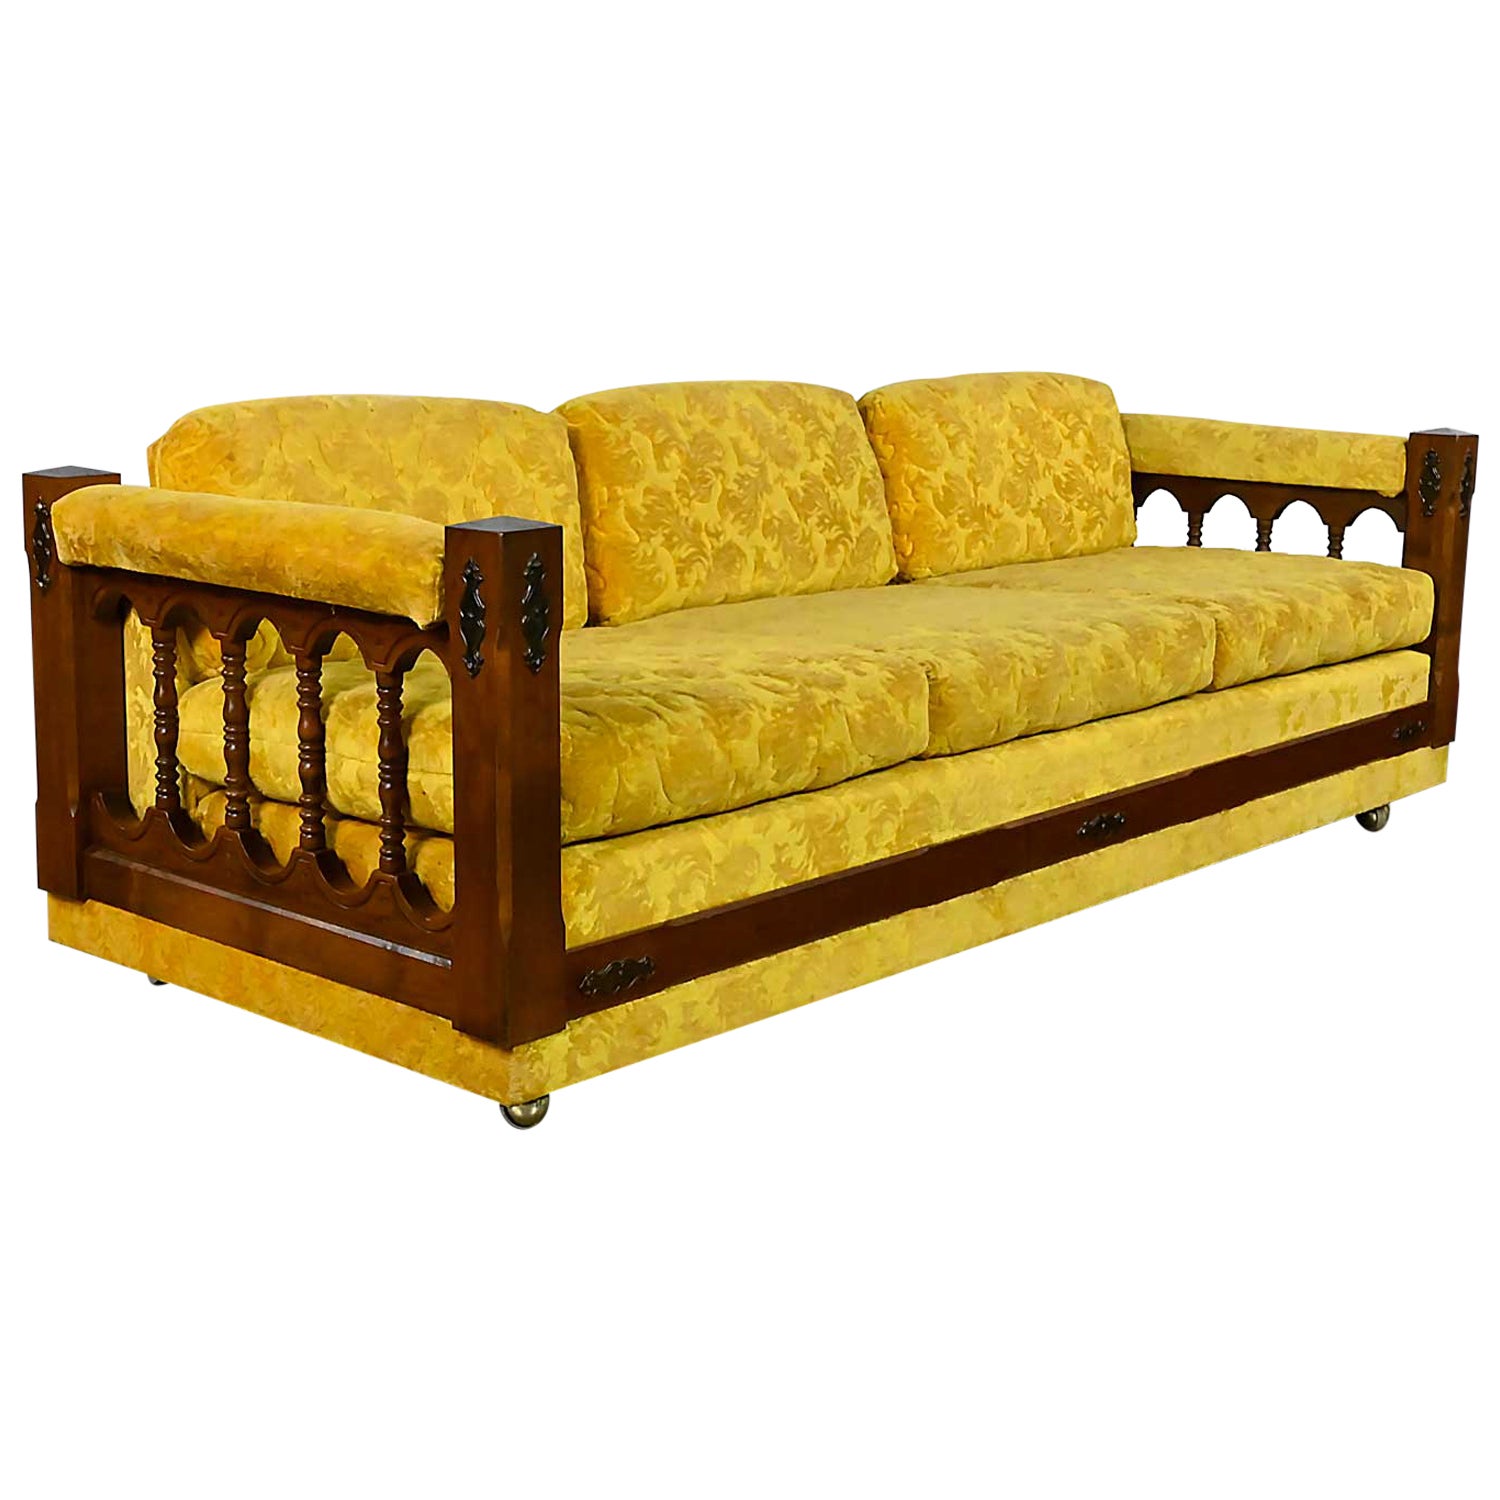 Canapé en tissu texturé doré de style néo-espagnol vintage tourné avec côtés en fuseau